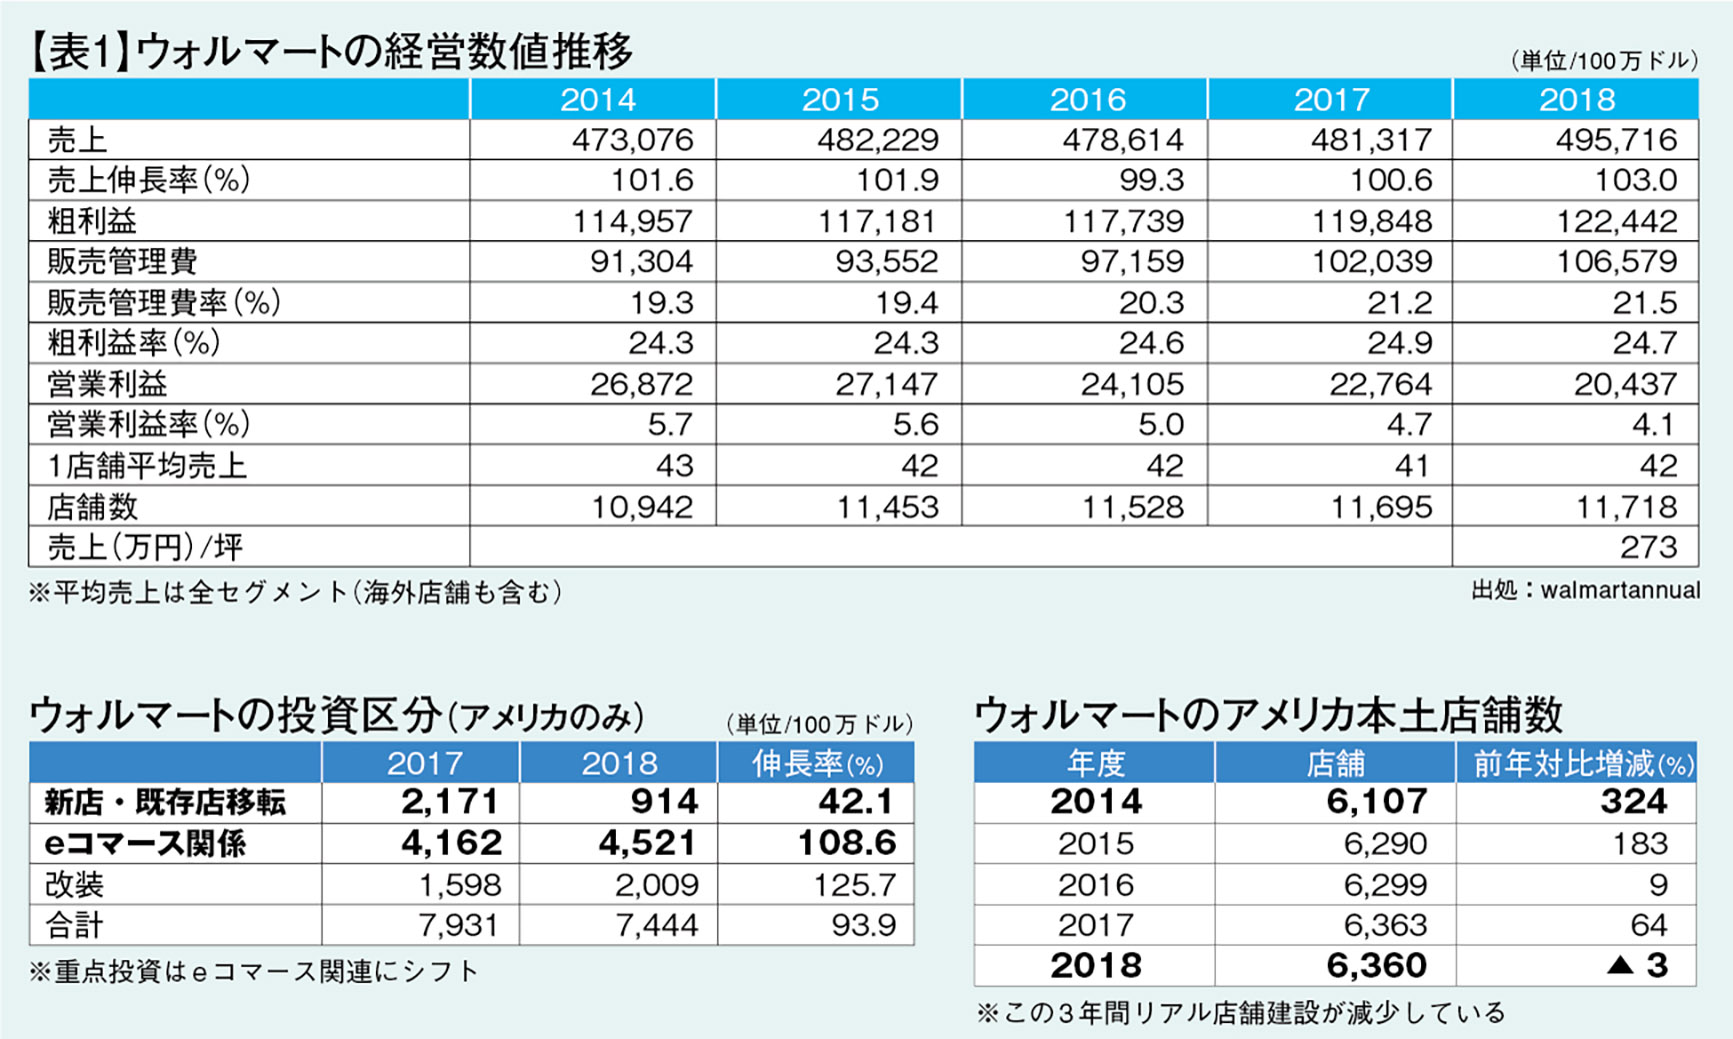 衰退進む日本型gms 総合スーパー 歯止めがかからない現実 中 公式 データ マックス Netib News